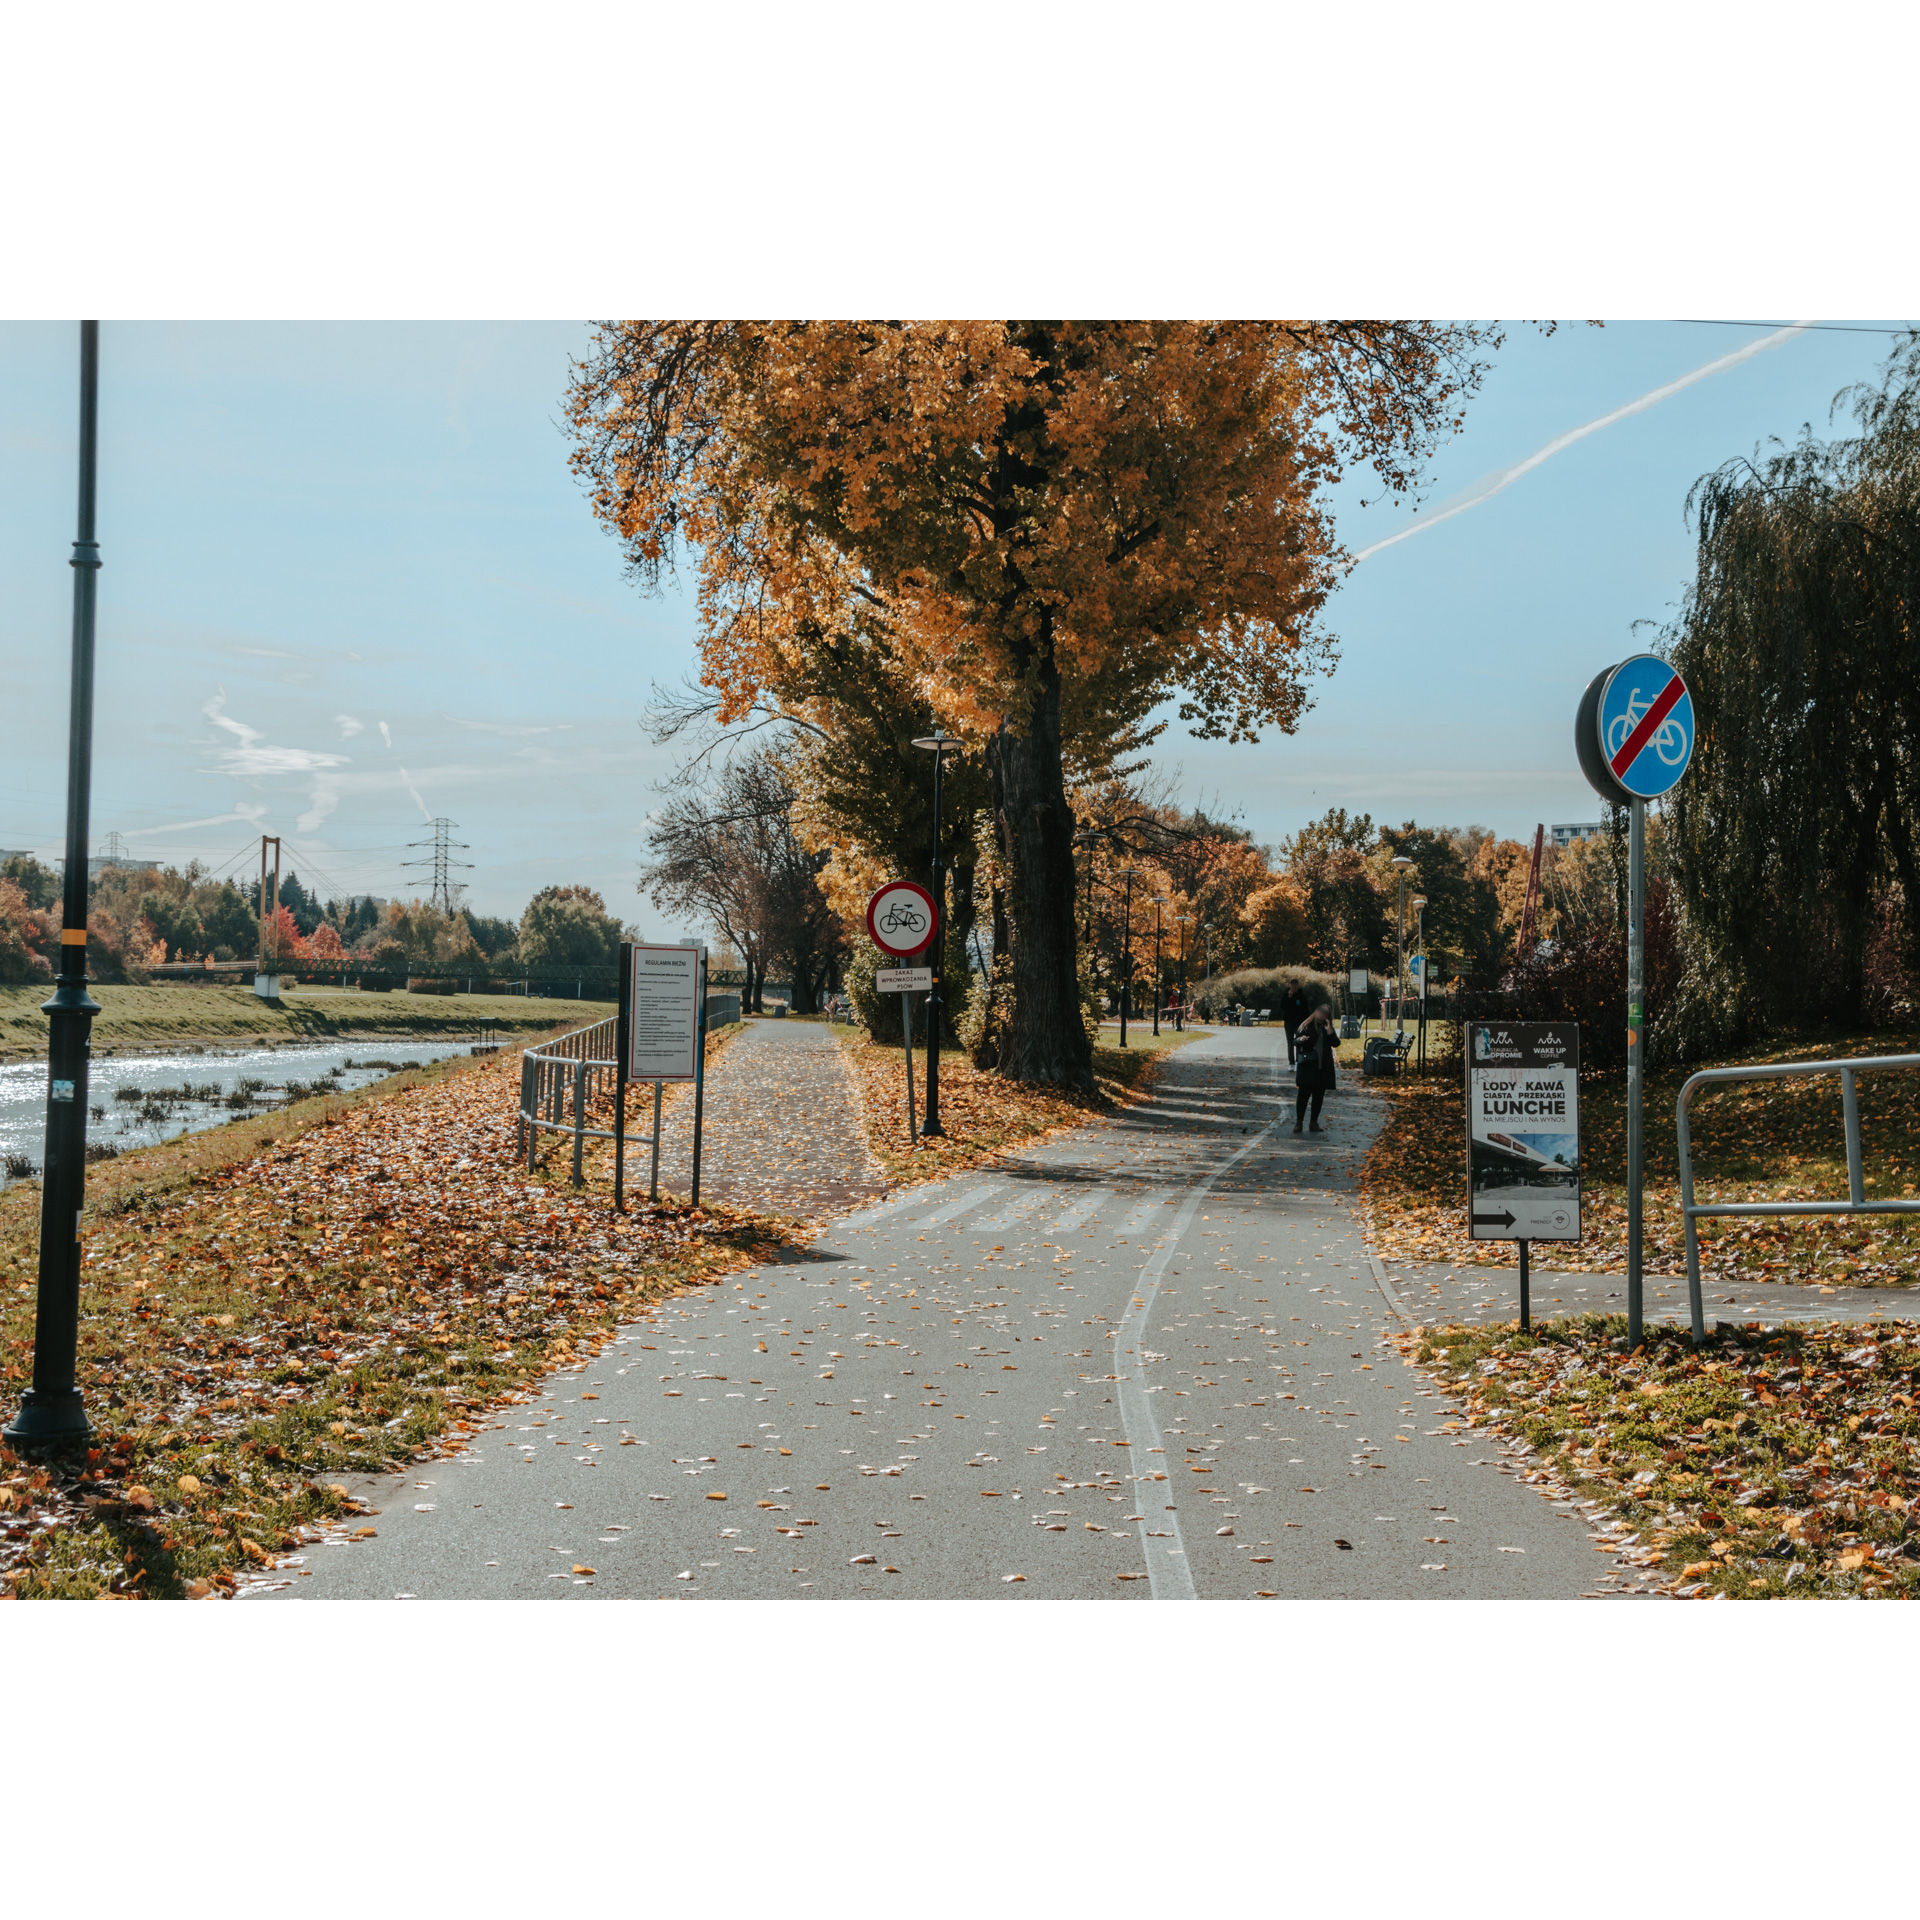 Rozwidlenie asfaltowej ścieżki dla pieszych i rowerzystów, po lewej stronie rzeka, w tle wysokie drzewo z kolorowymi liśćmi